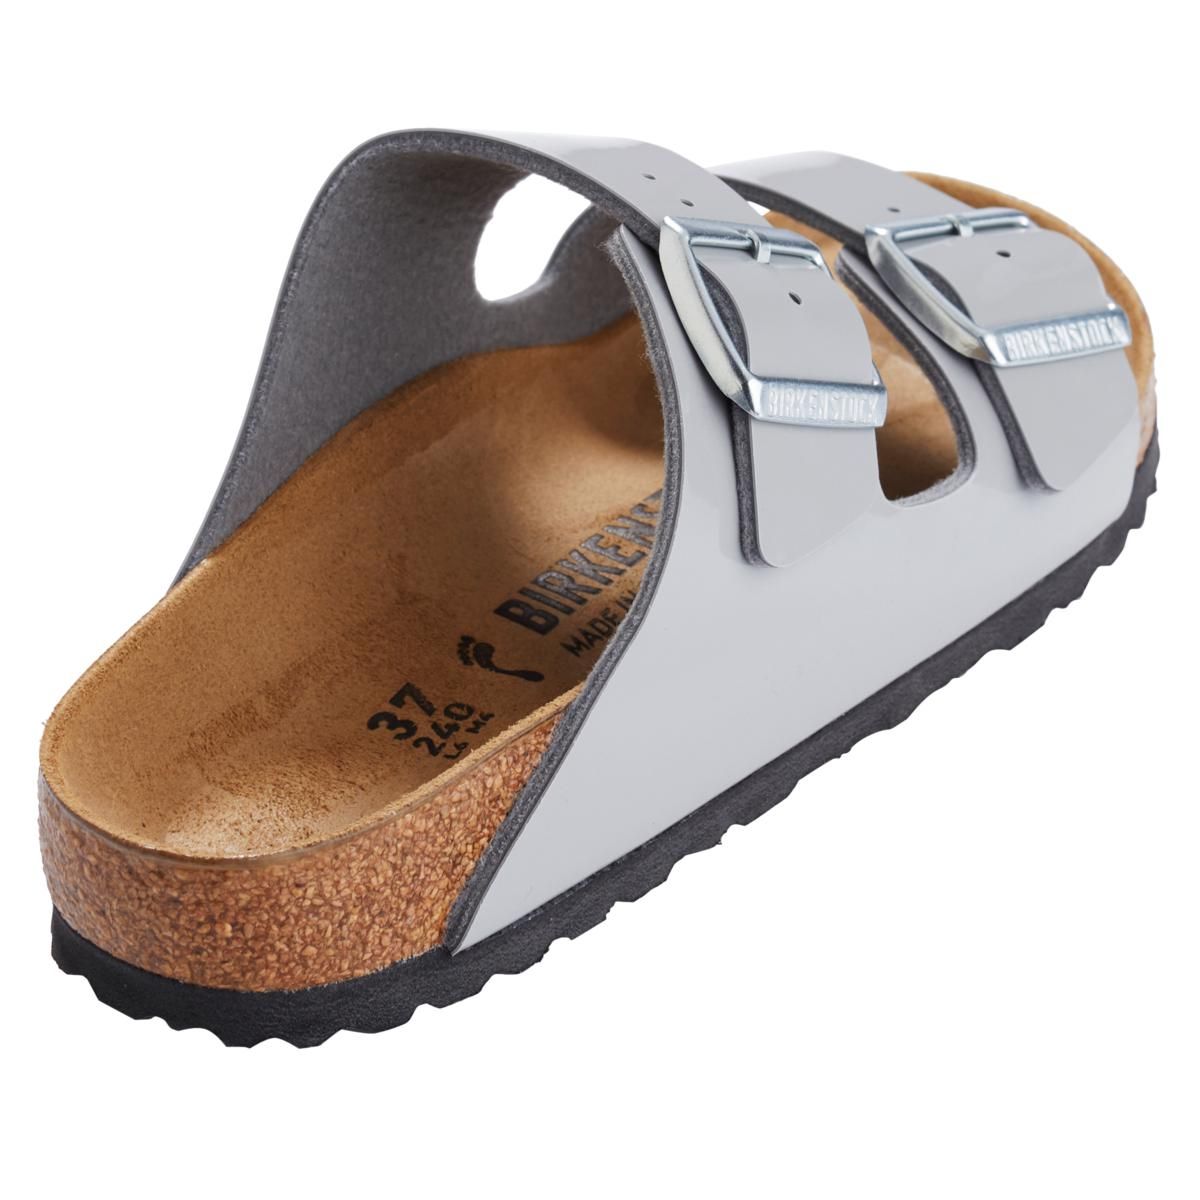 Birkenstock Arizona Alloy Patent Two-Strap Slide Sandal - 9962613 | HSN | HSN